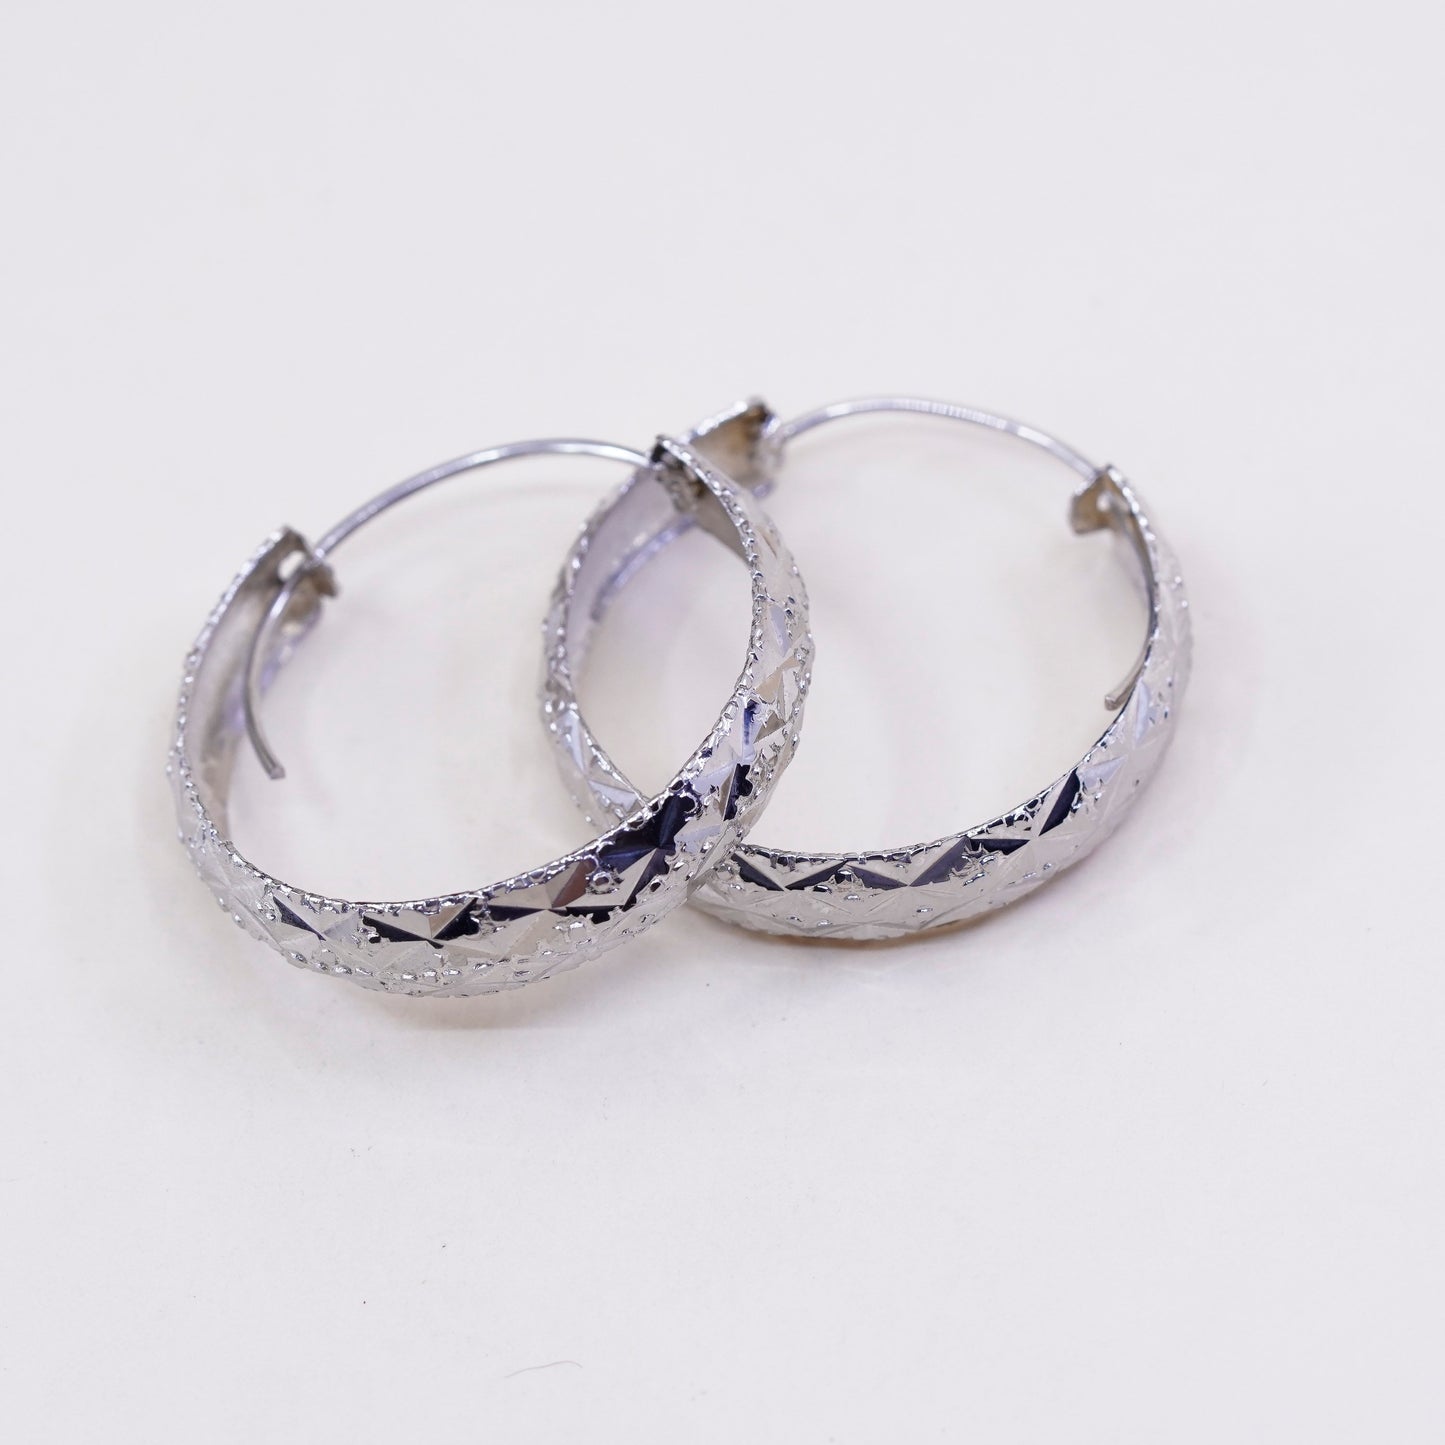 1.25”, Vintage sterling silver loop earrings, textured primitive hoops